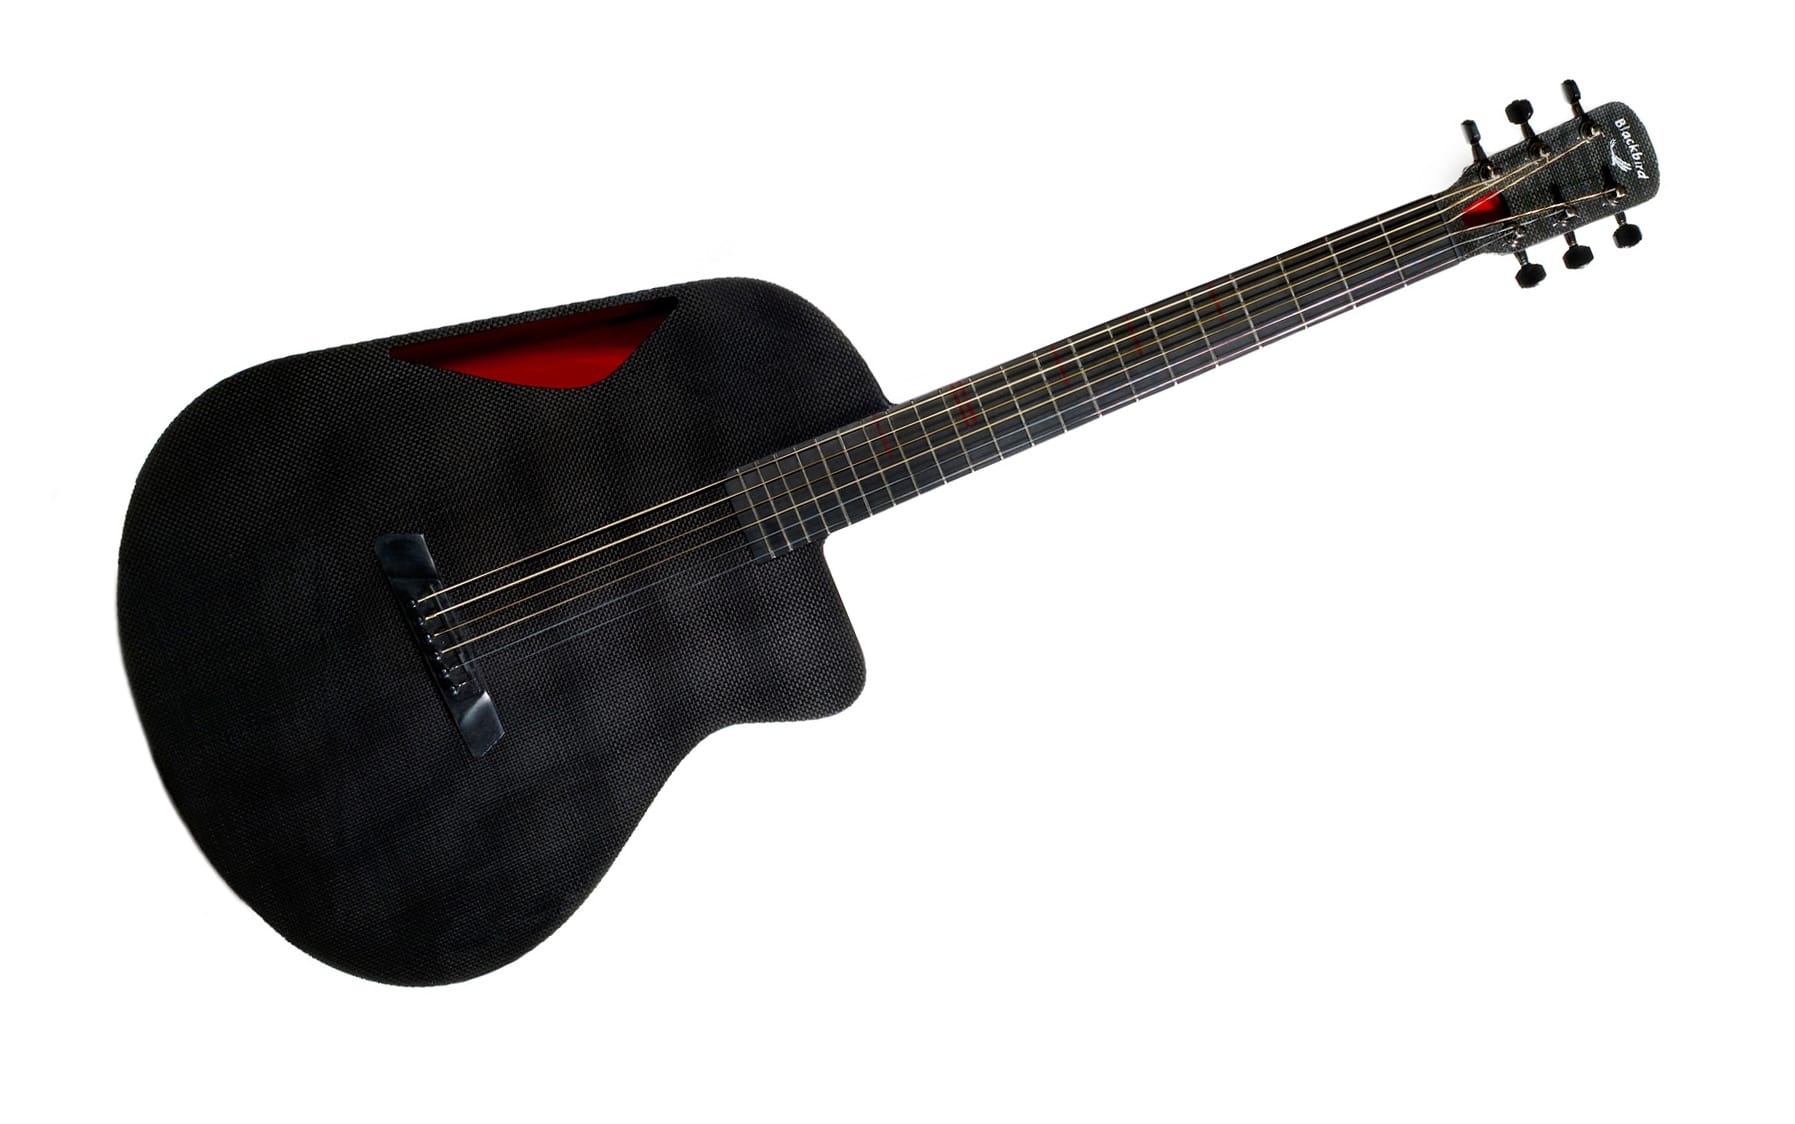 Selbst für Gitarren eignet sich Carbon hervorragend: Korpus und Hals der Blackbird bestehen daraus. Die Akustikgitarre kostet etwa 2500 Dollar - umgerechnet rund 2200 Euro.